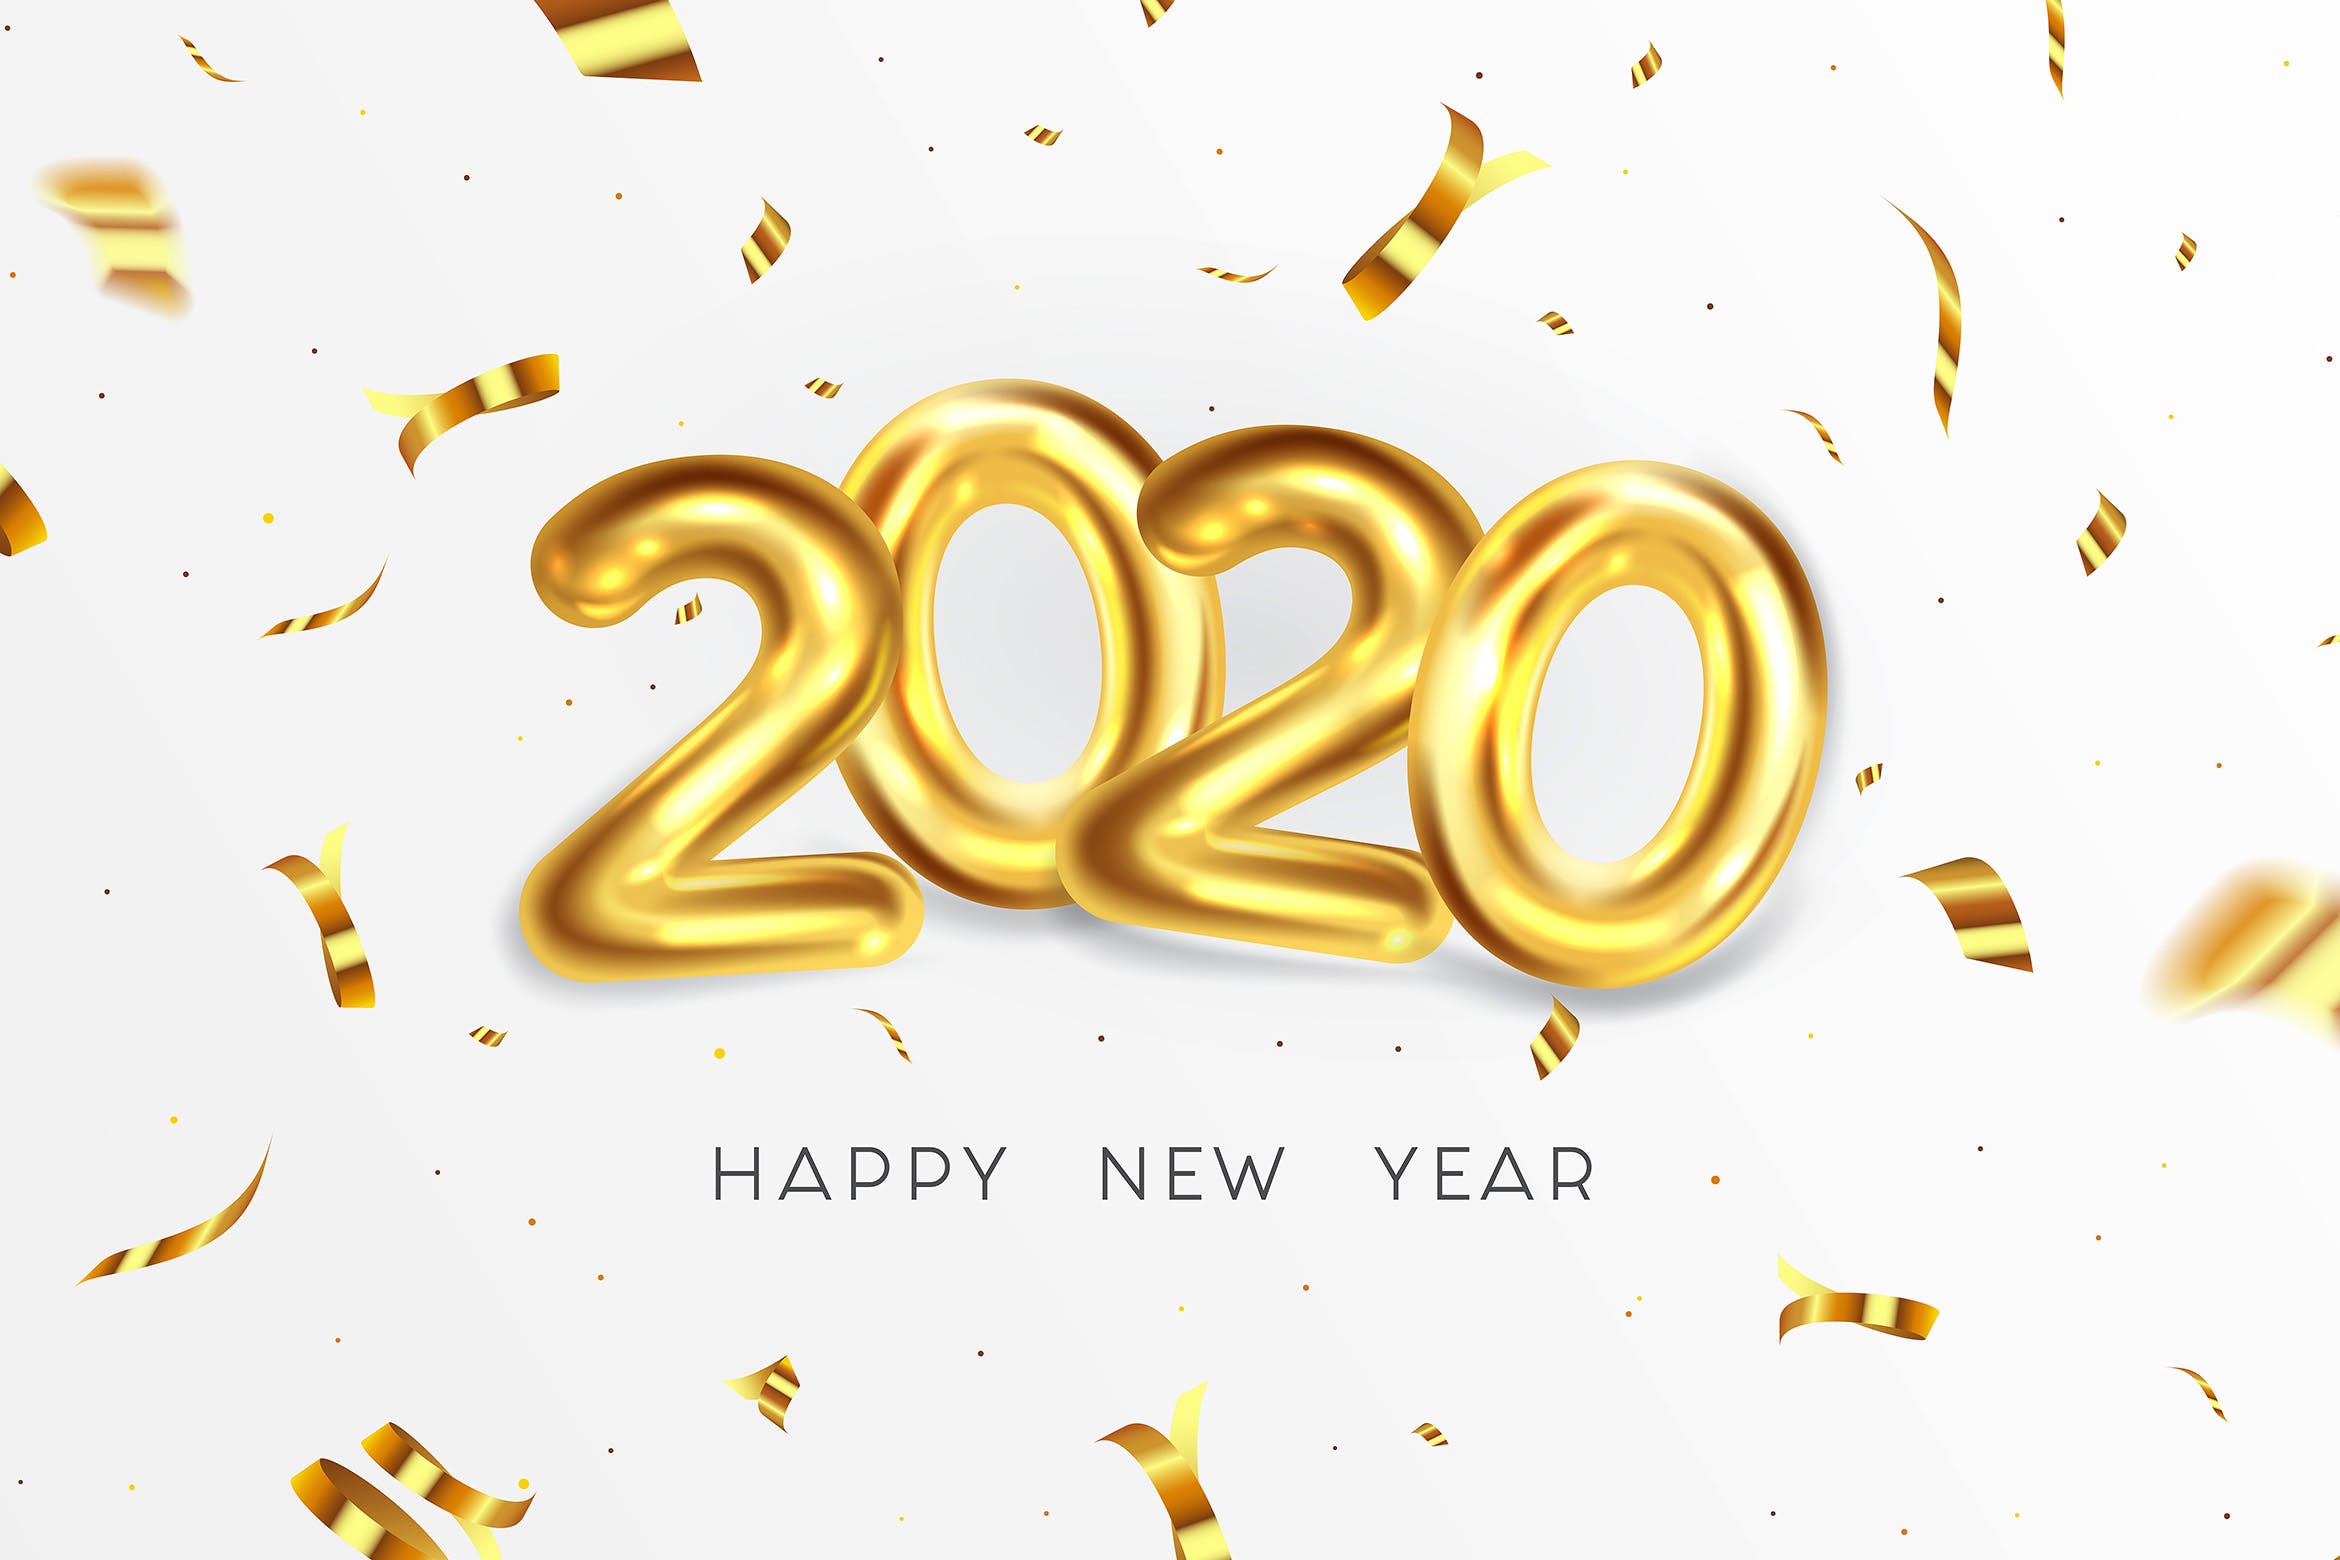 2020年金属字体特效新年贺卡设计模板 Happy New Year 2020 greeting card插图